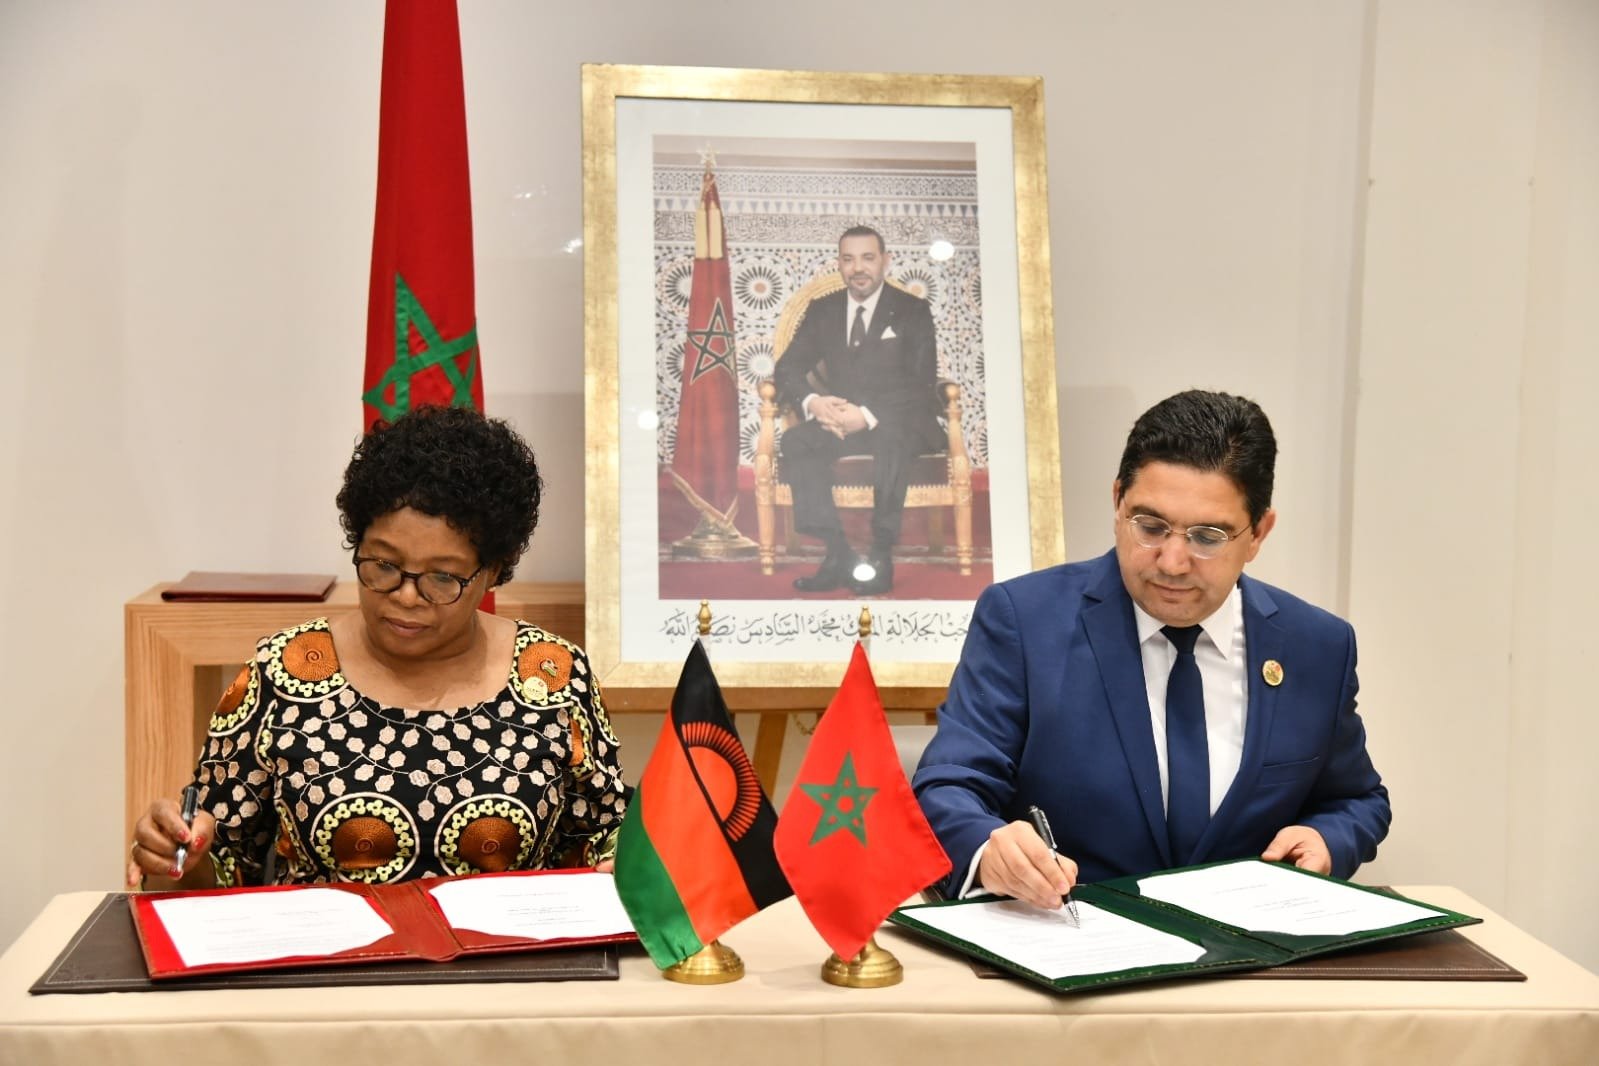 Engagement Renouvelé du Malawi en Faveur de l’Intégrité Territoriale du Maroc et de son Initiative d’Autonomie pour le Sahara